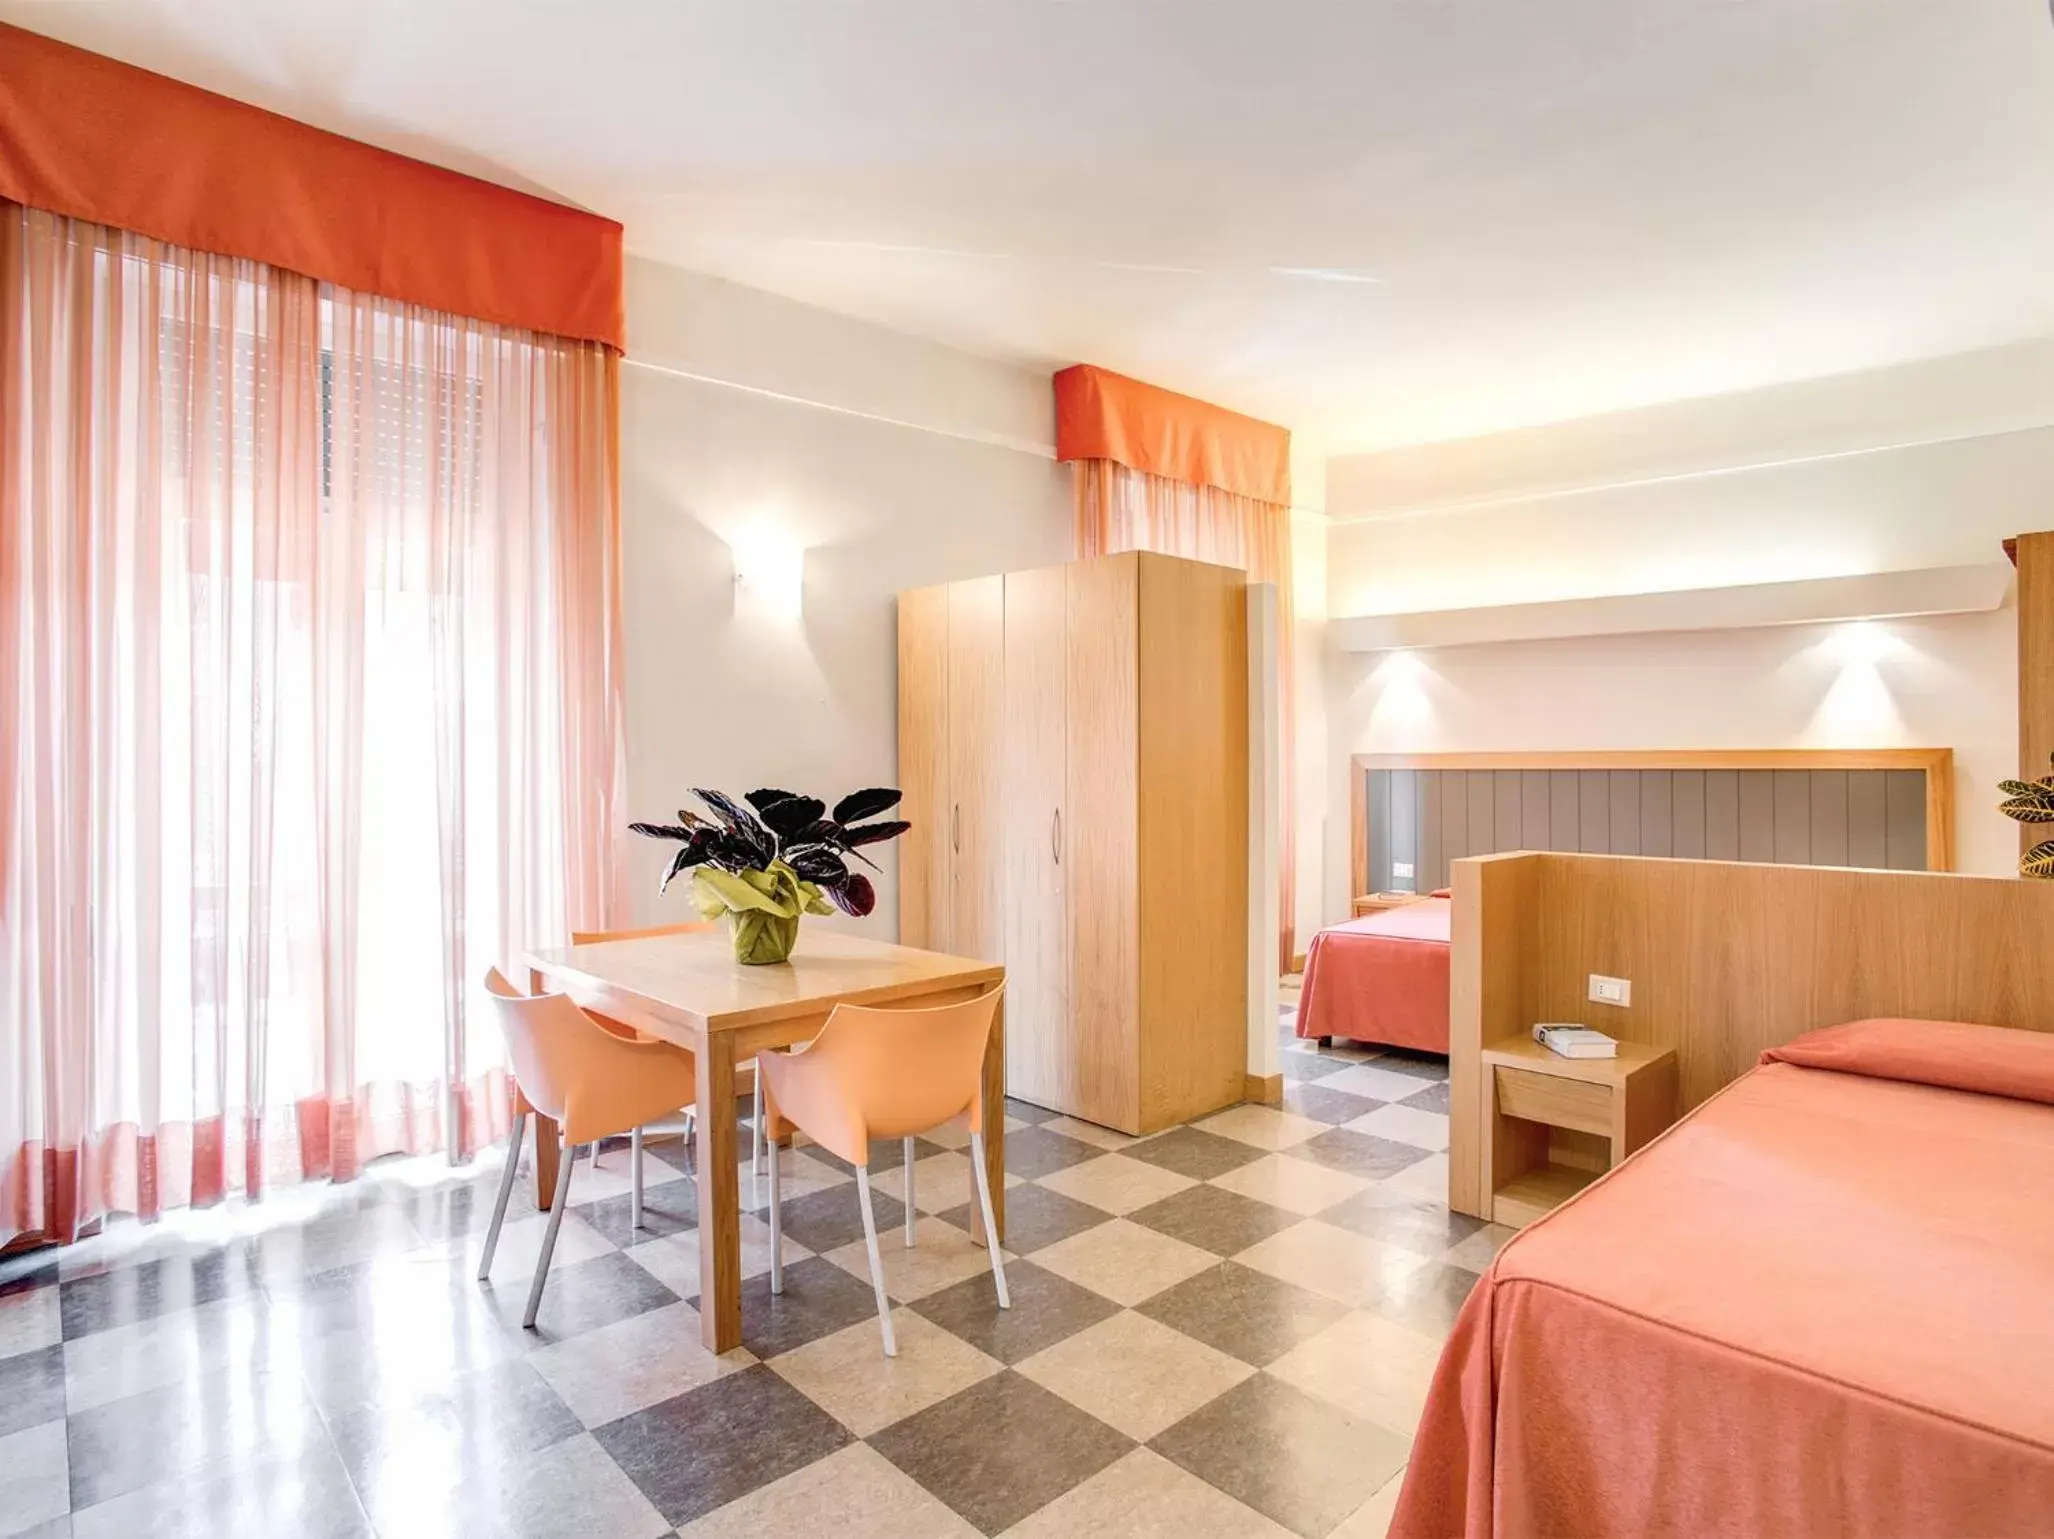 Photo of the whole room in Hotel Delle Nazioni